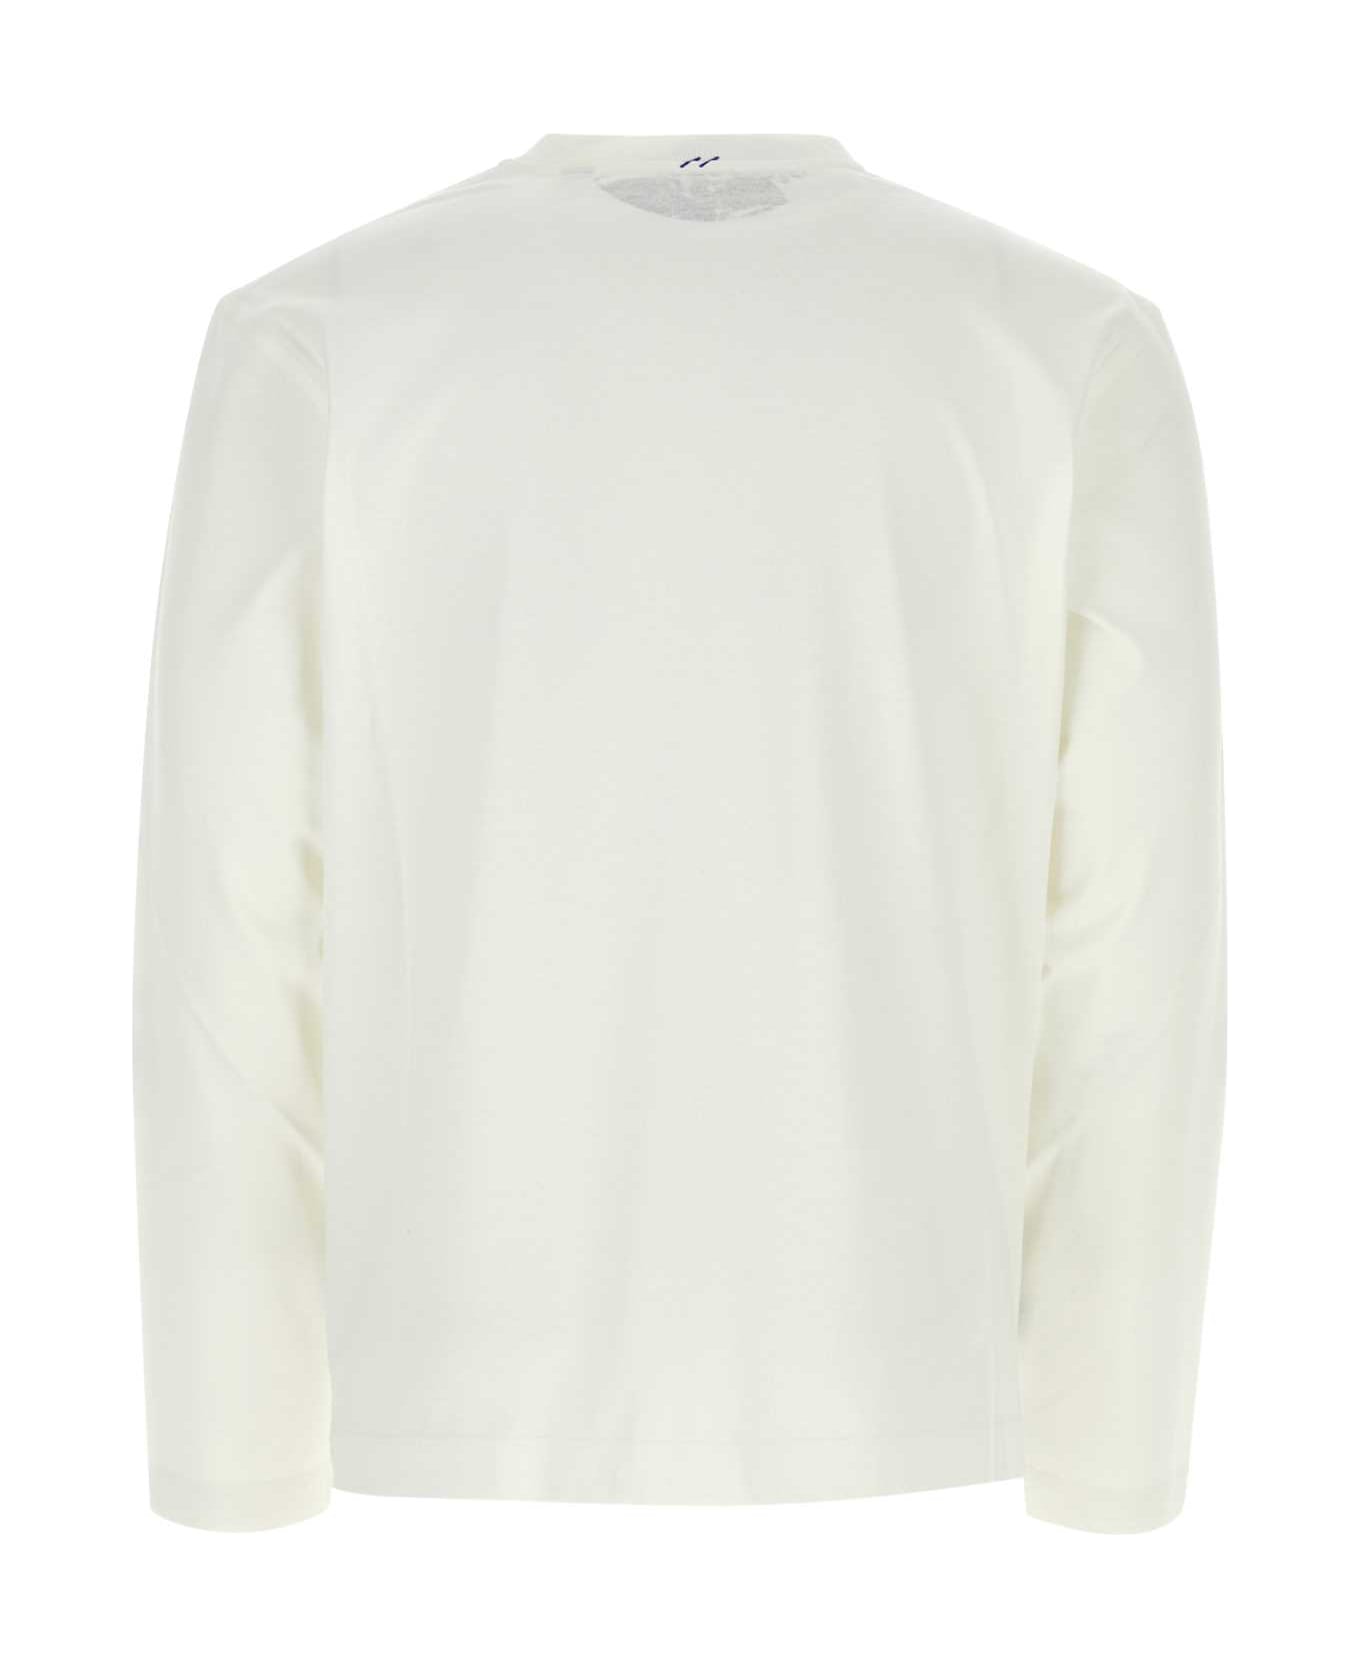 Burberry White Cotton T-shirt - RAIN シャツ